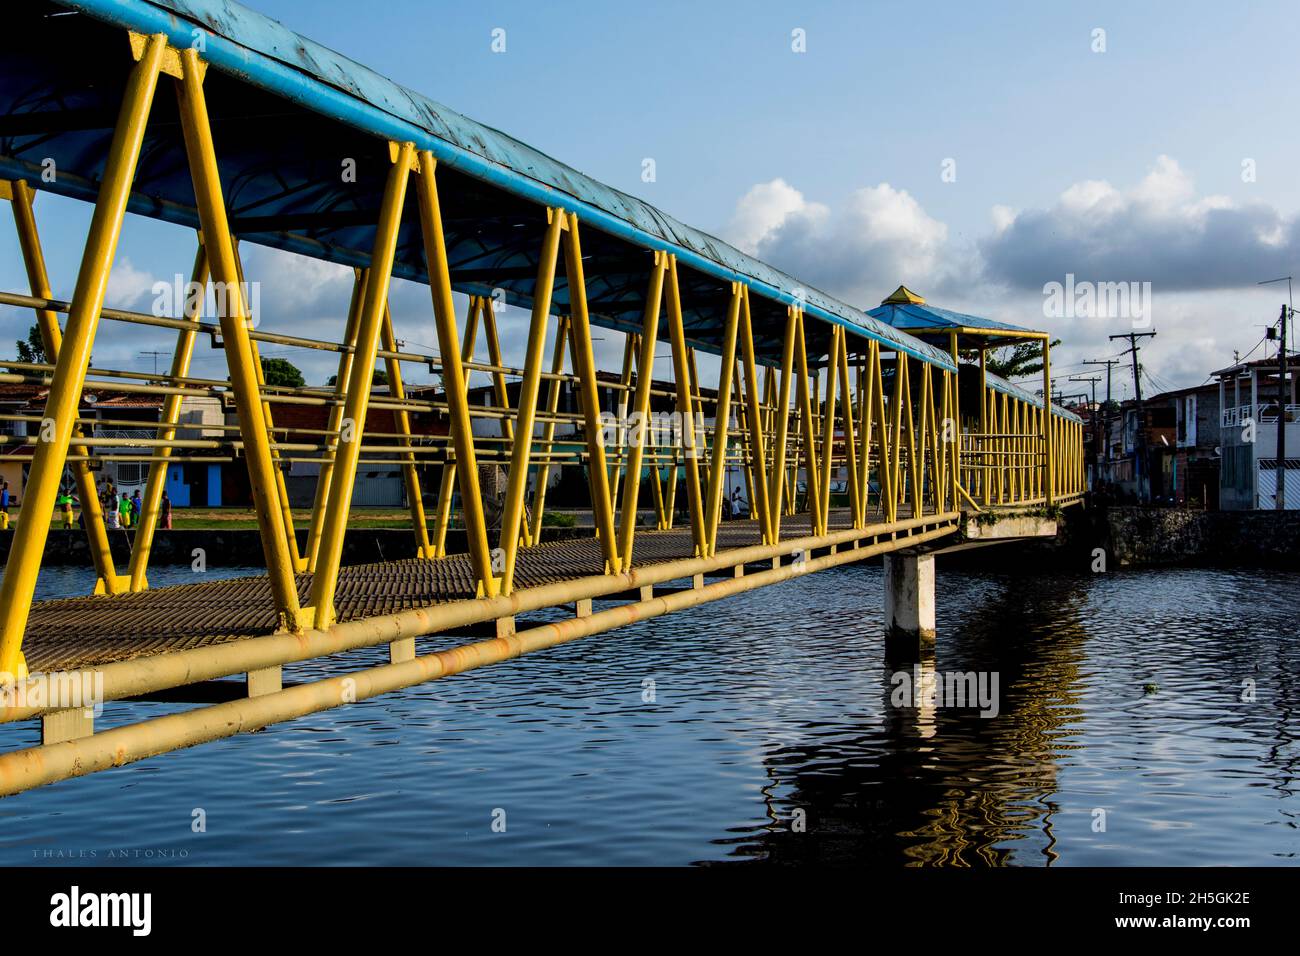 Nazaré, Bahia, Brasile - 11 gennaio 2016: Passerella pedonale in ferro su un fiume di colore giallo e blu. Riflessione in acqua. Foto Stock